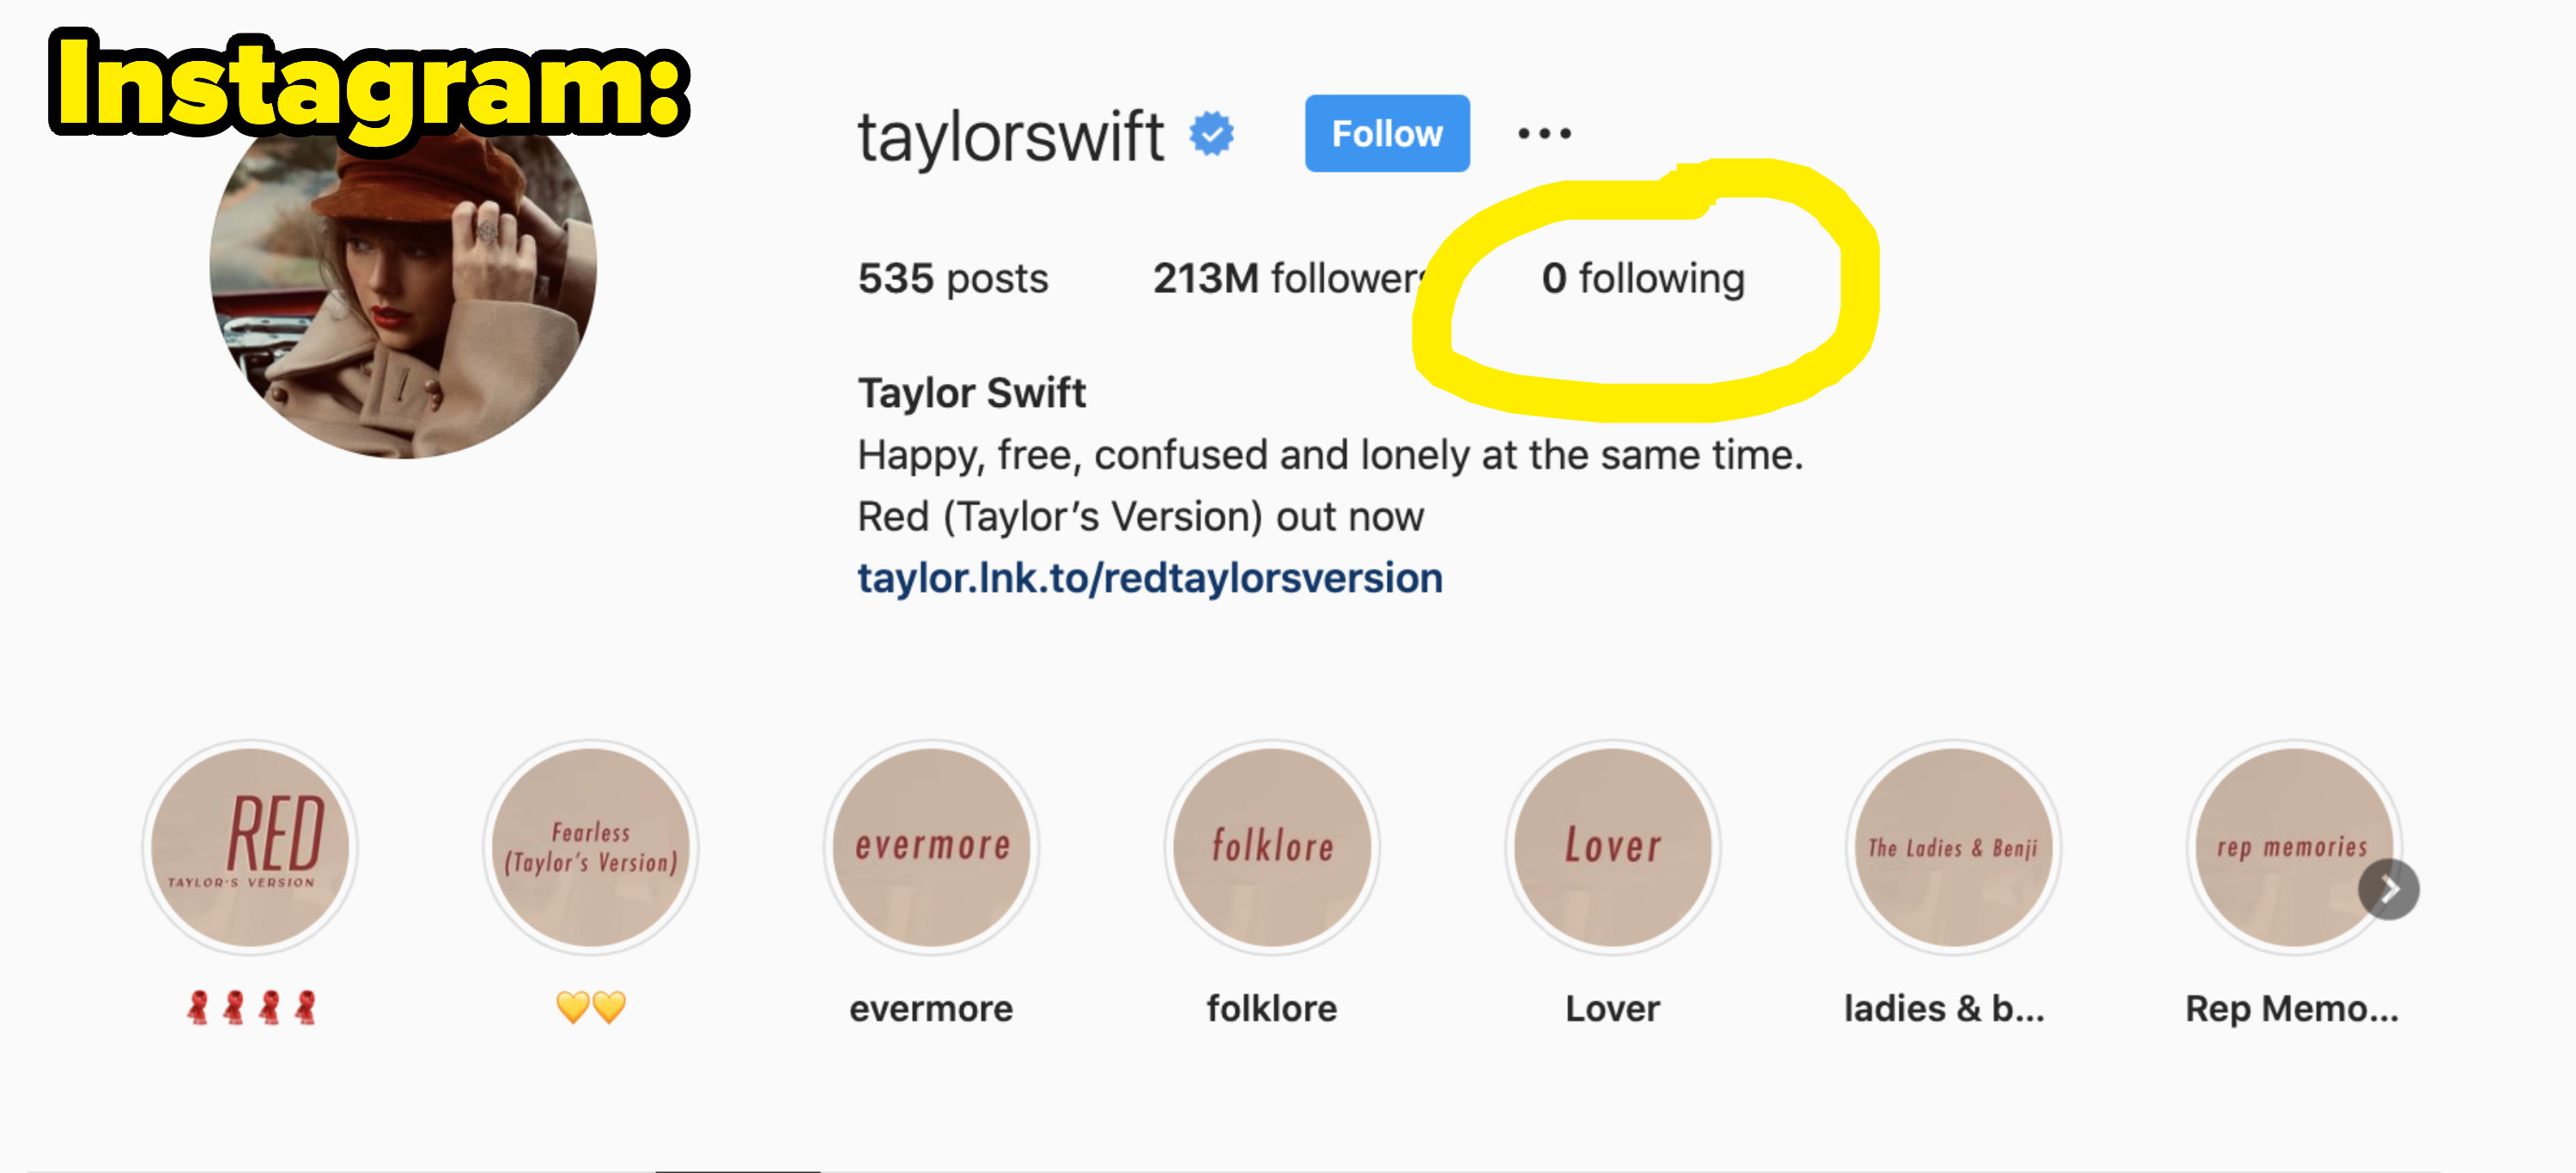 Taylor Swift following 0 people on Instagram